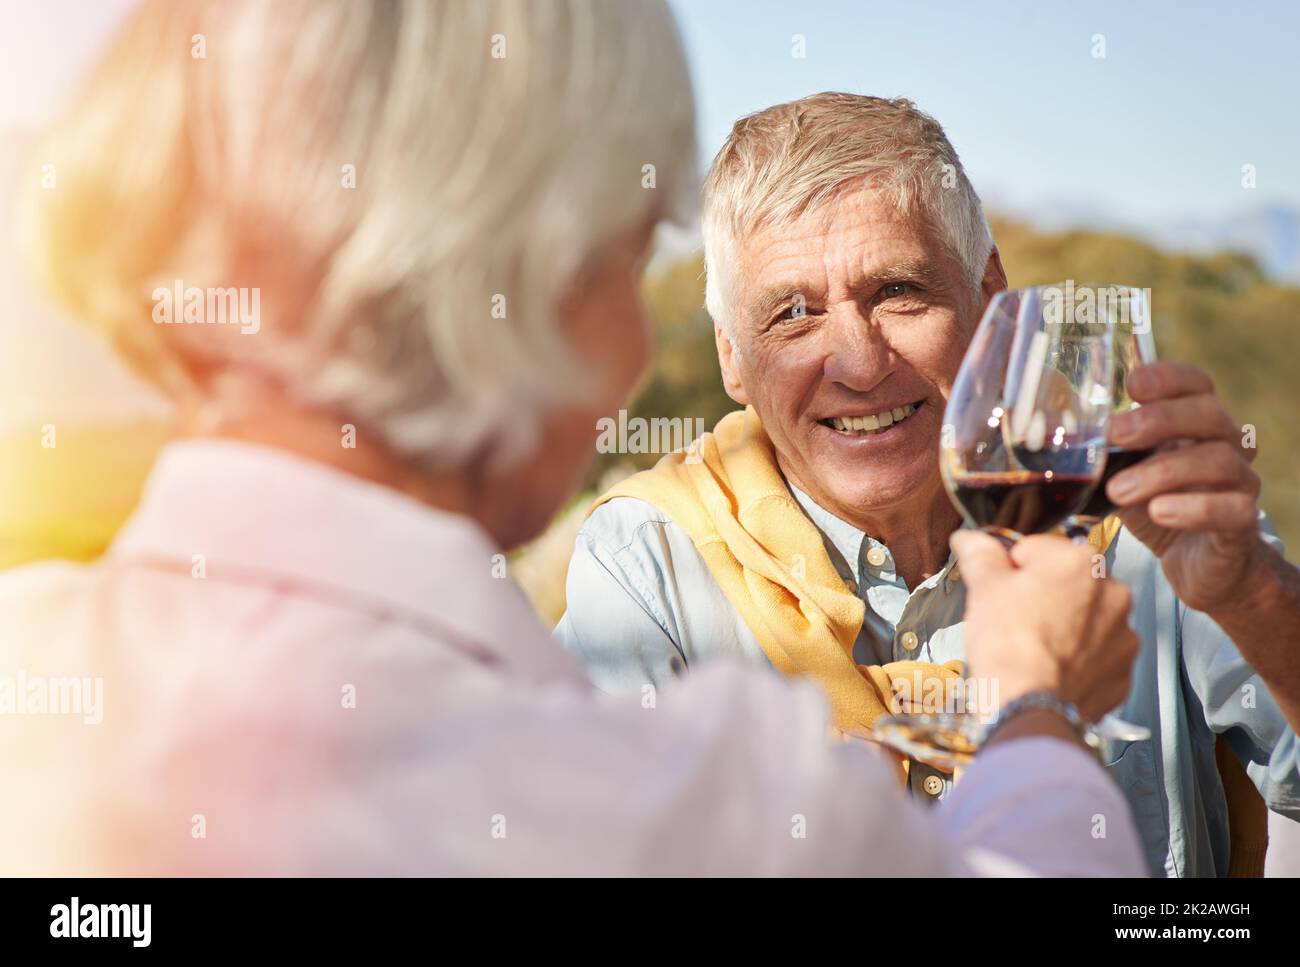 Célébrez la vie. Photo d'un heureux couple senior en cours de toasting avec leurs verres de vin. Banque D'Images